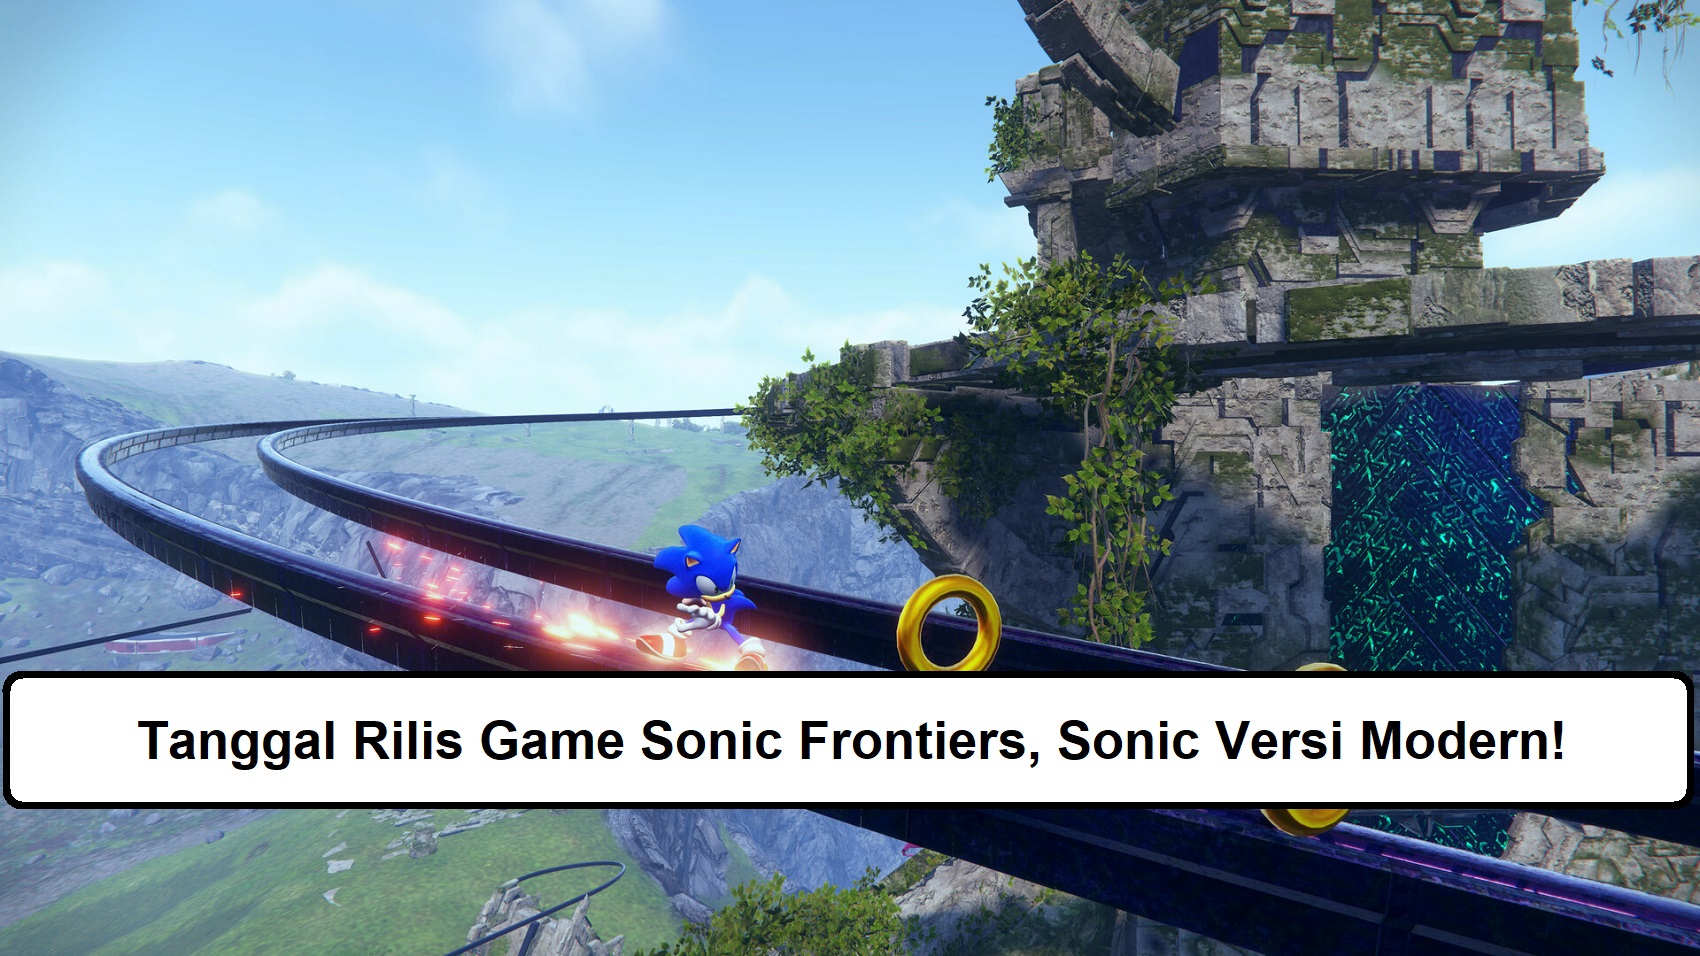 Tanggal Rilis Game Sonic Frontiers, Sonic Versi Modern!